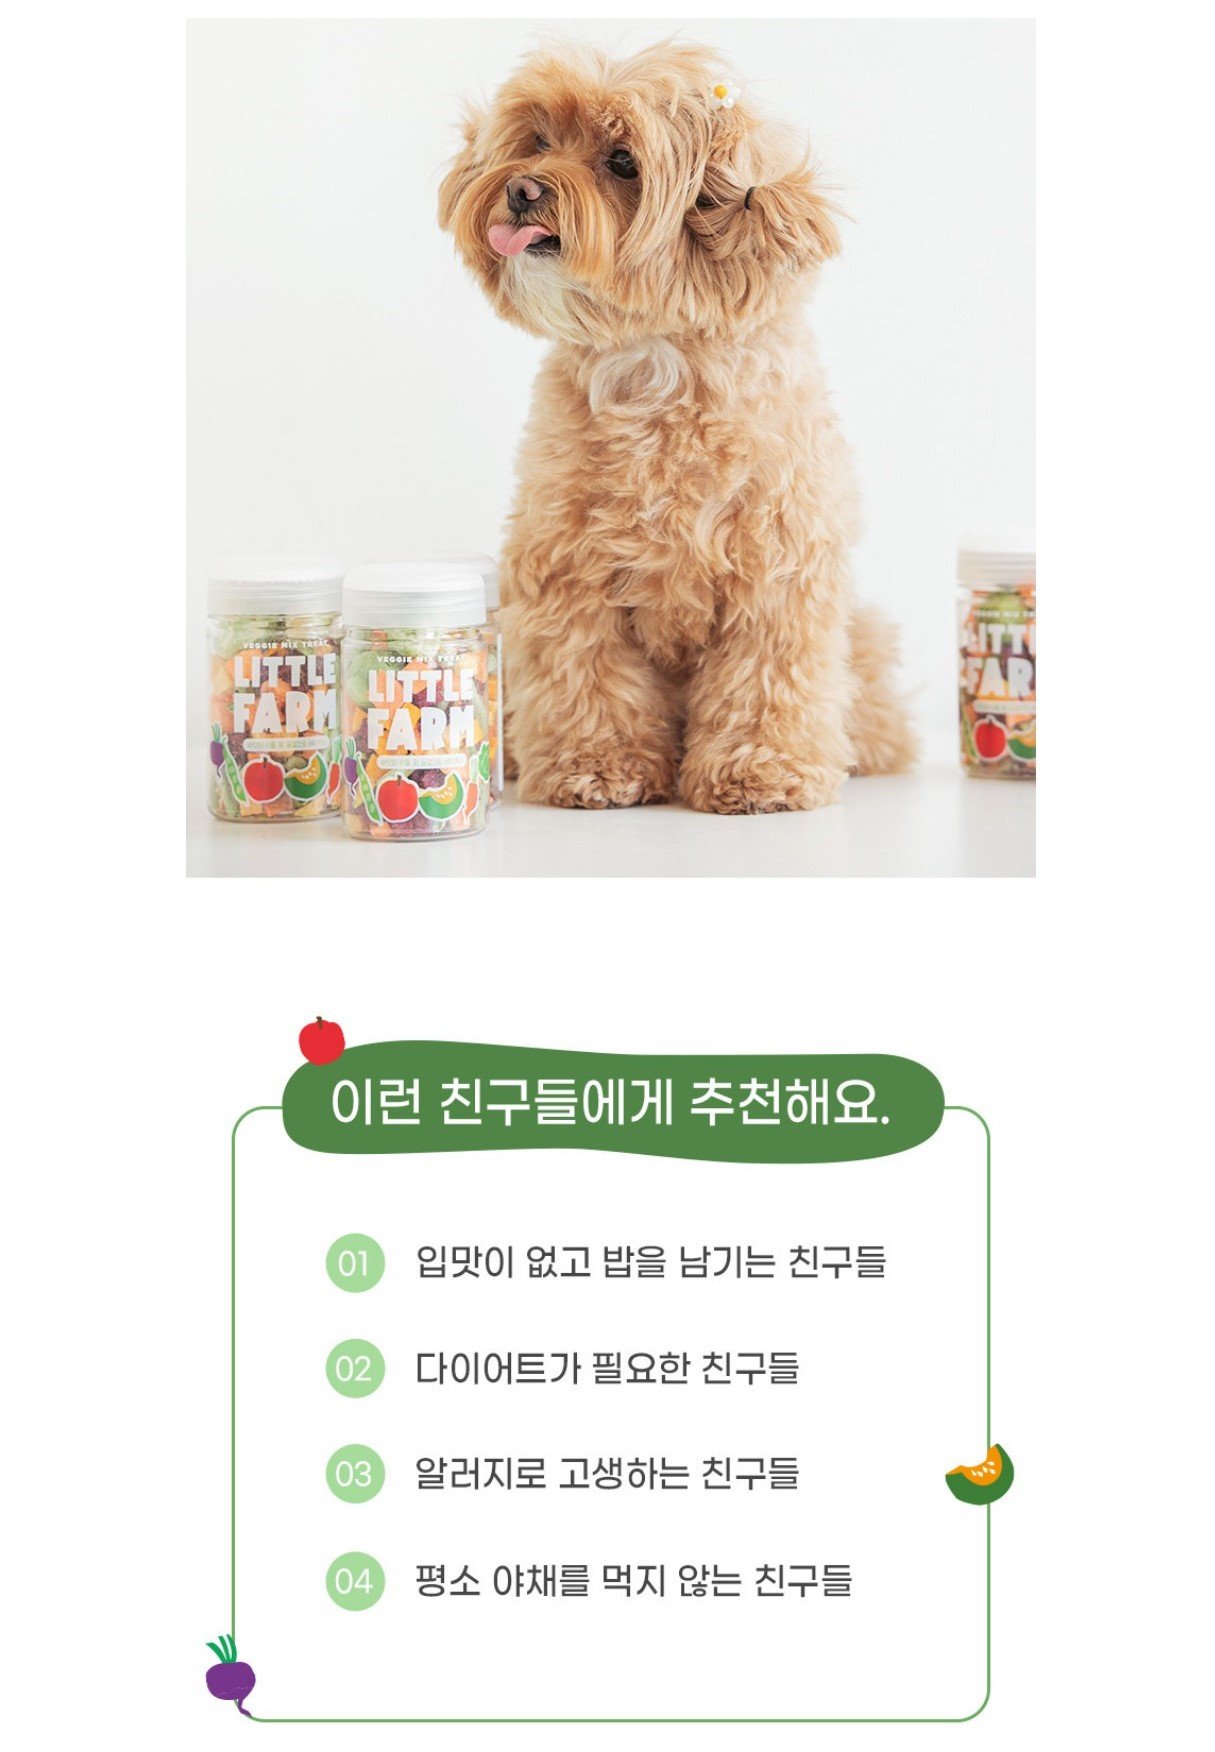 韓國食品-[바잇미] 리틀팜 베지믹스 40g